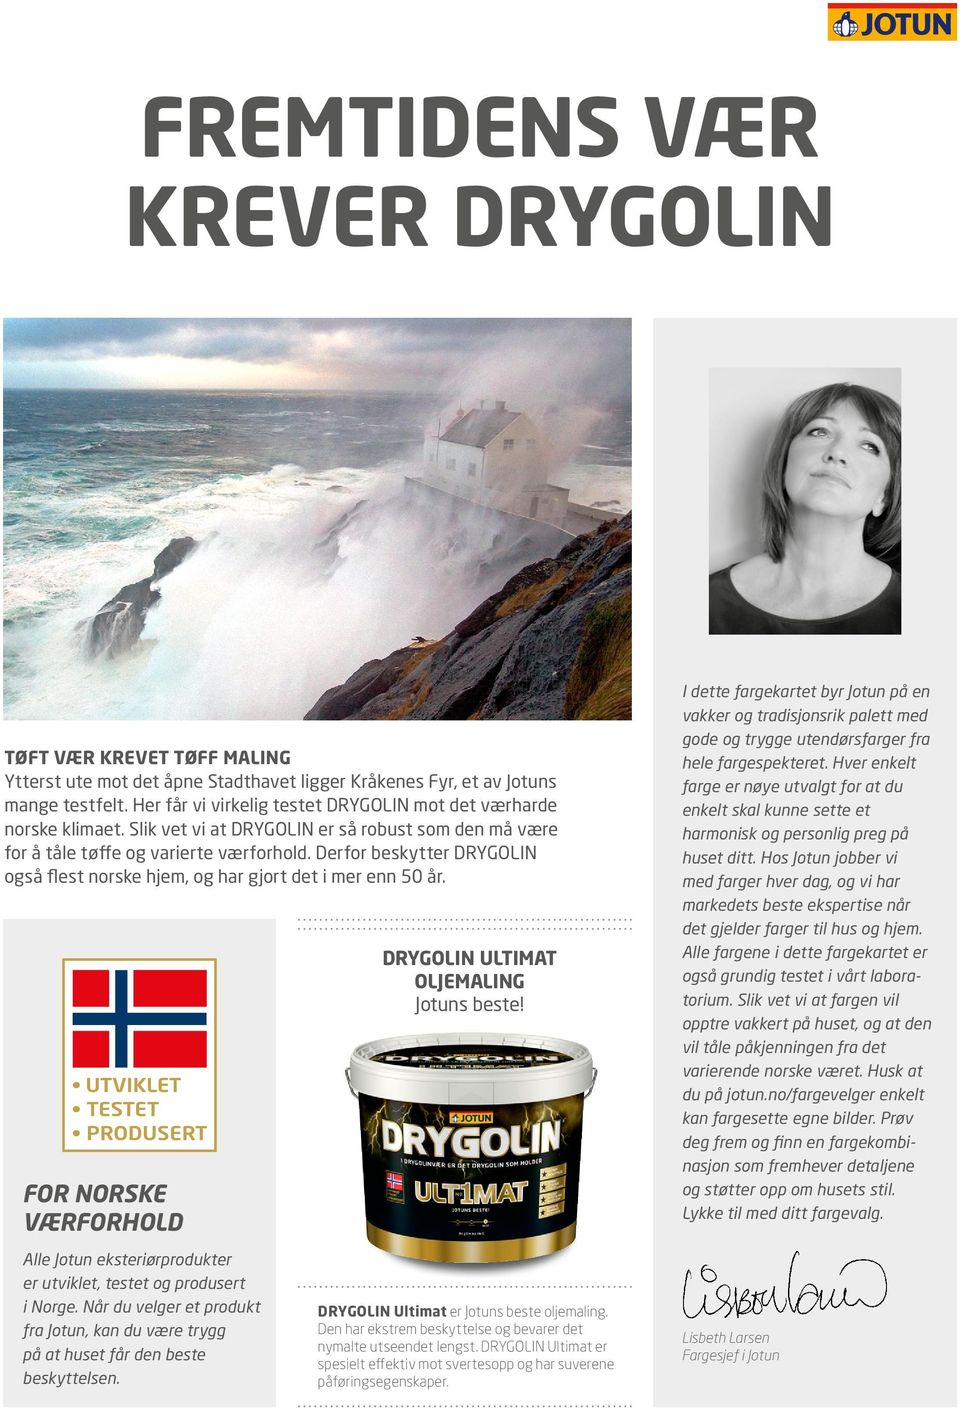 Derfor beskytter DRYGOLIN også flest norske hjem, og har gjort det i mer enn 50 år. FOR NORSKE VÆRFORHOLD Alle Jotun eksteriørprodukter er utviklet, testet og produsert i Norge.